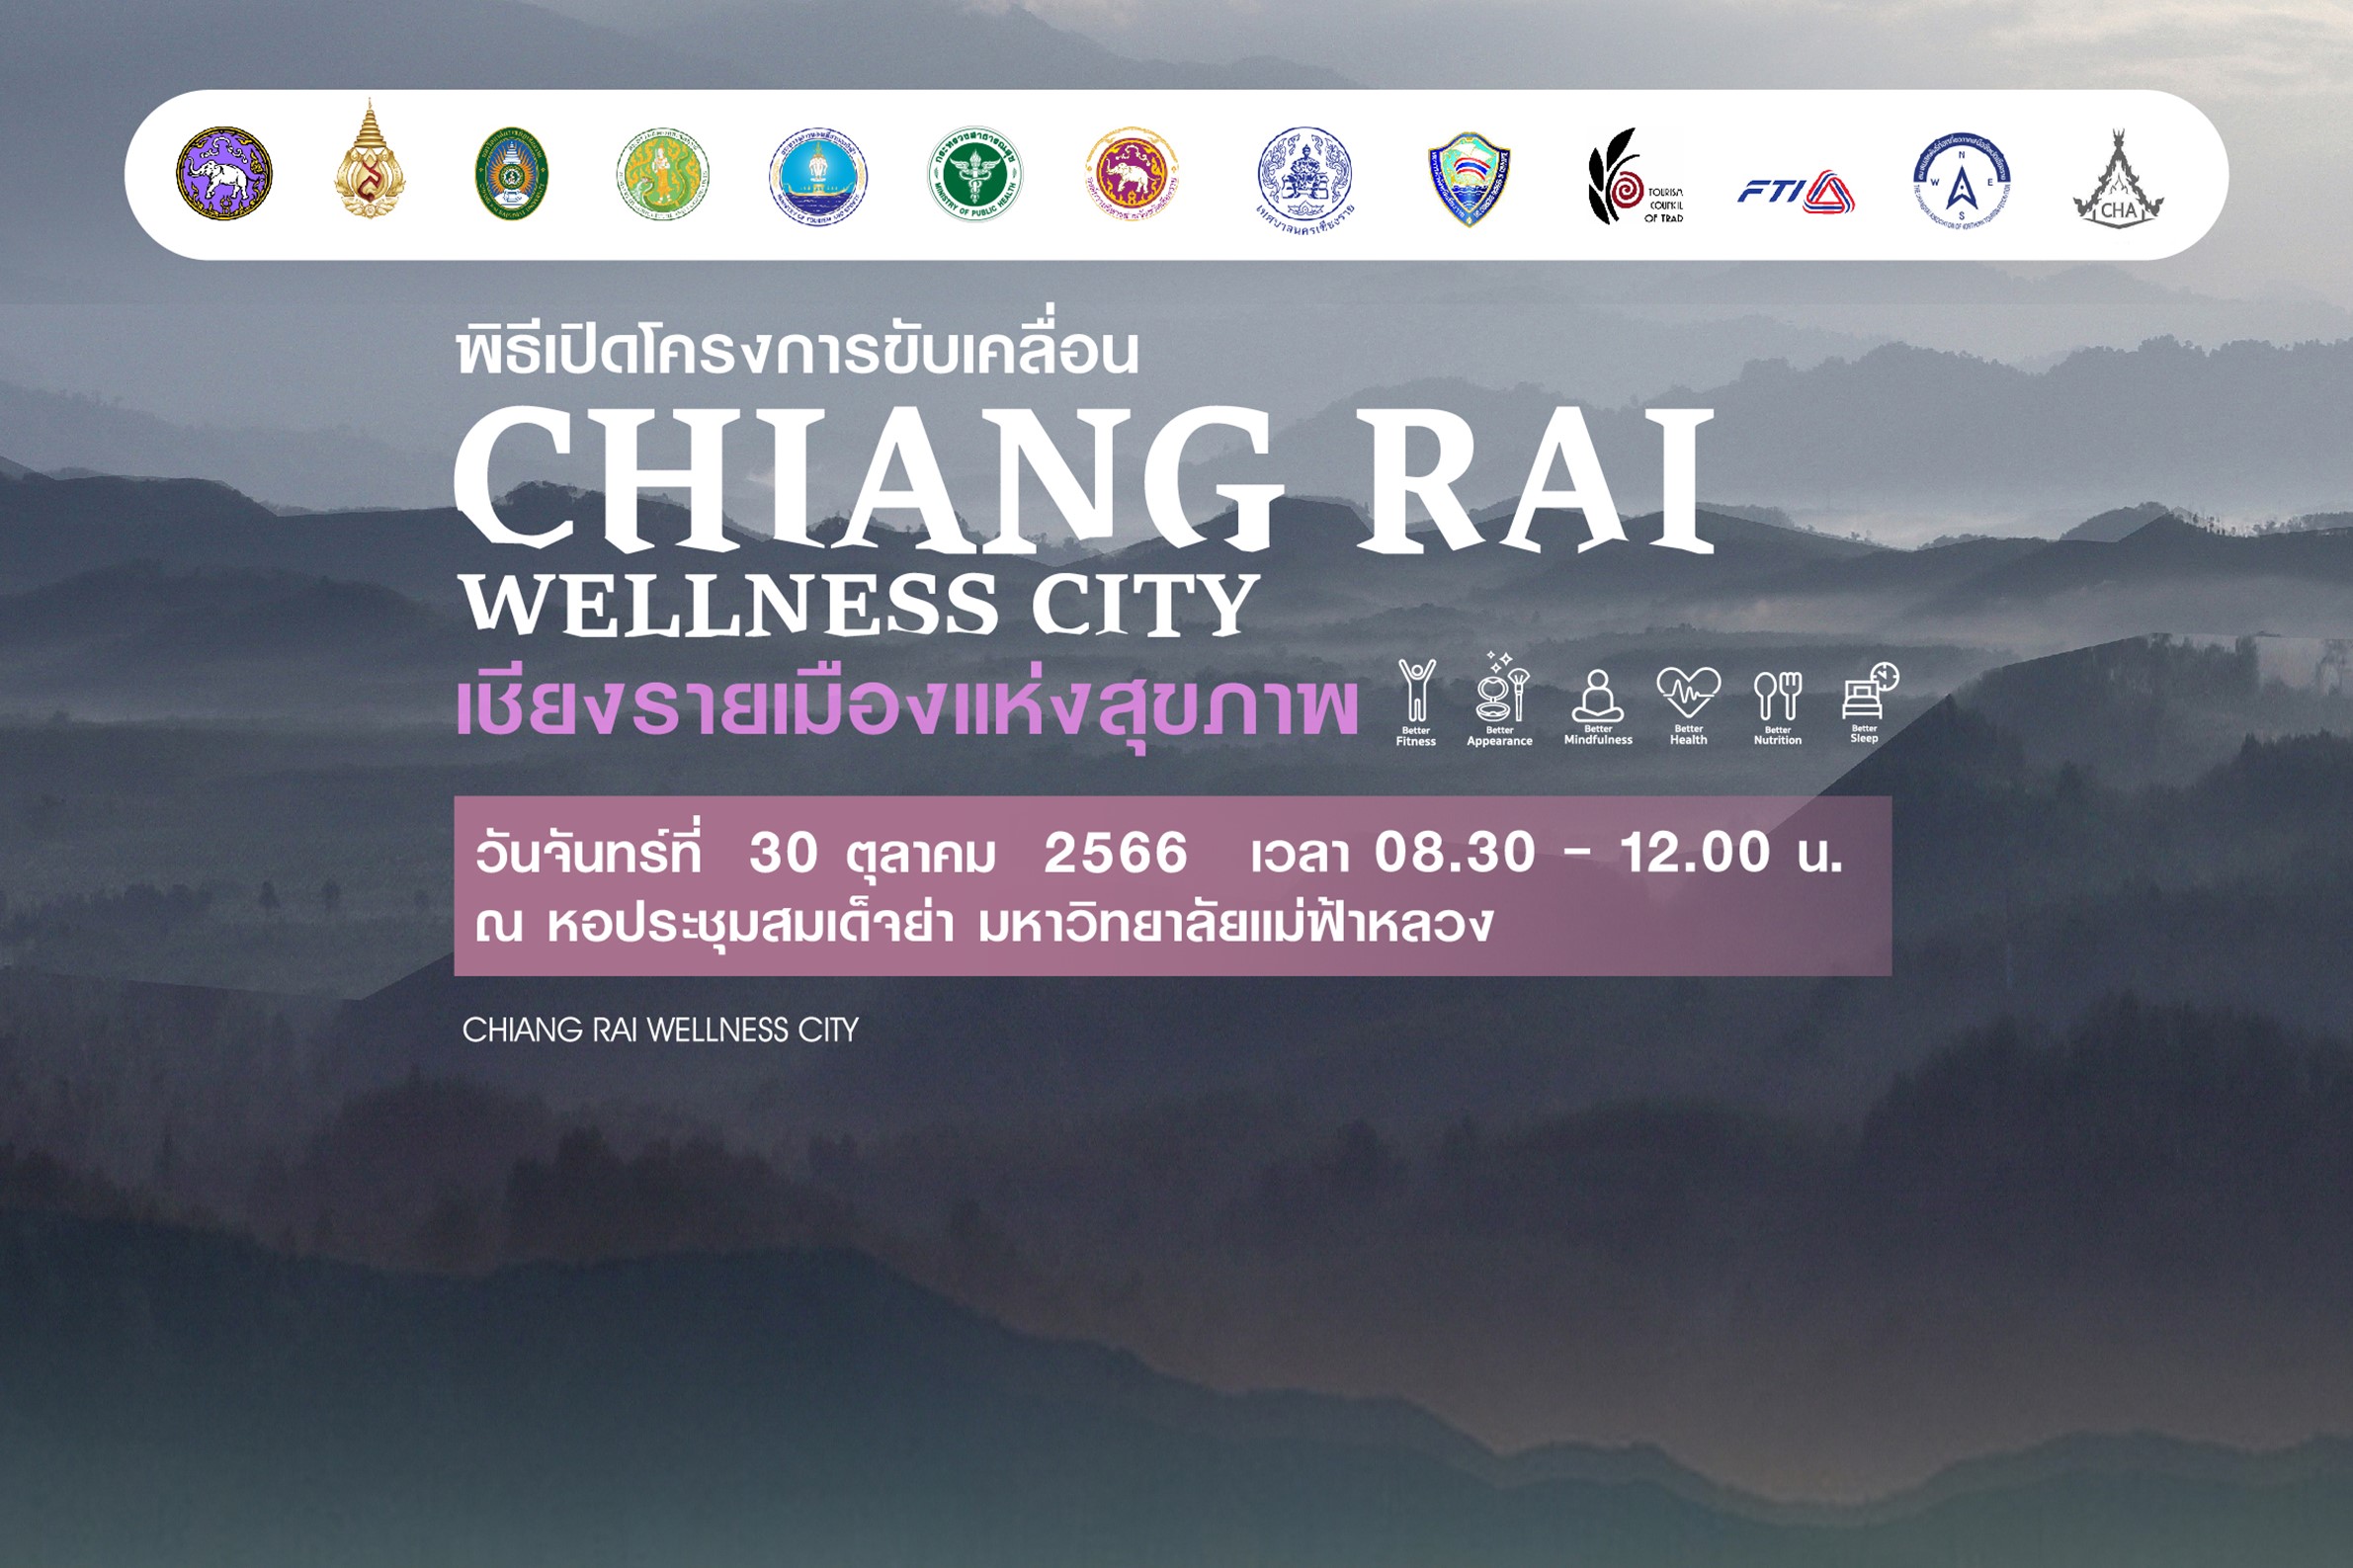 มฟล. ขอเชิญร่วมพิธีเปิดโครงการ CHIANG RAI WELLNESS CITY เชียงรายเมืองแห่งสุขภาพ